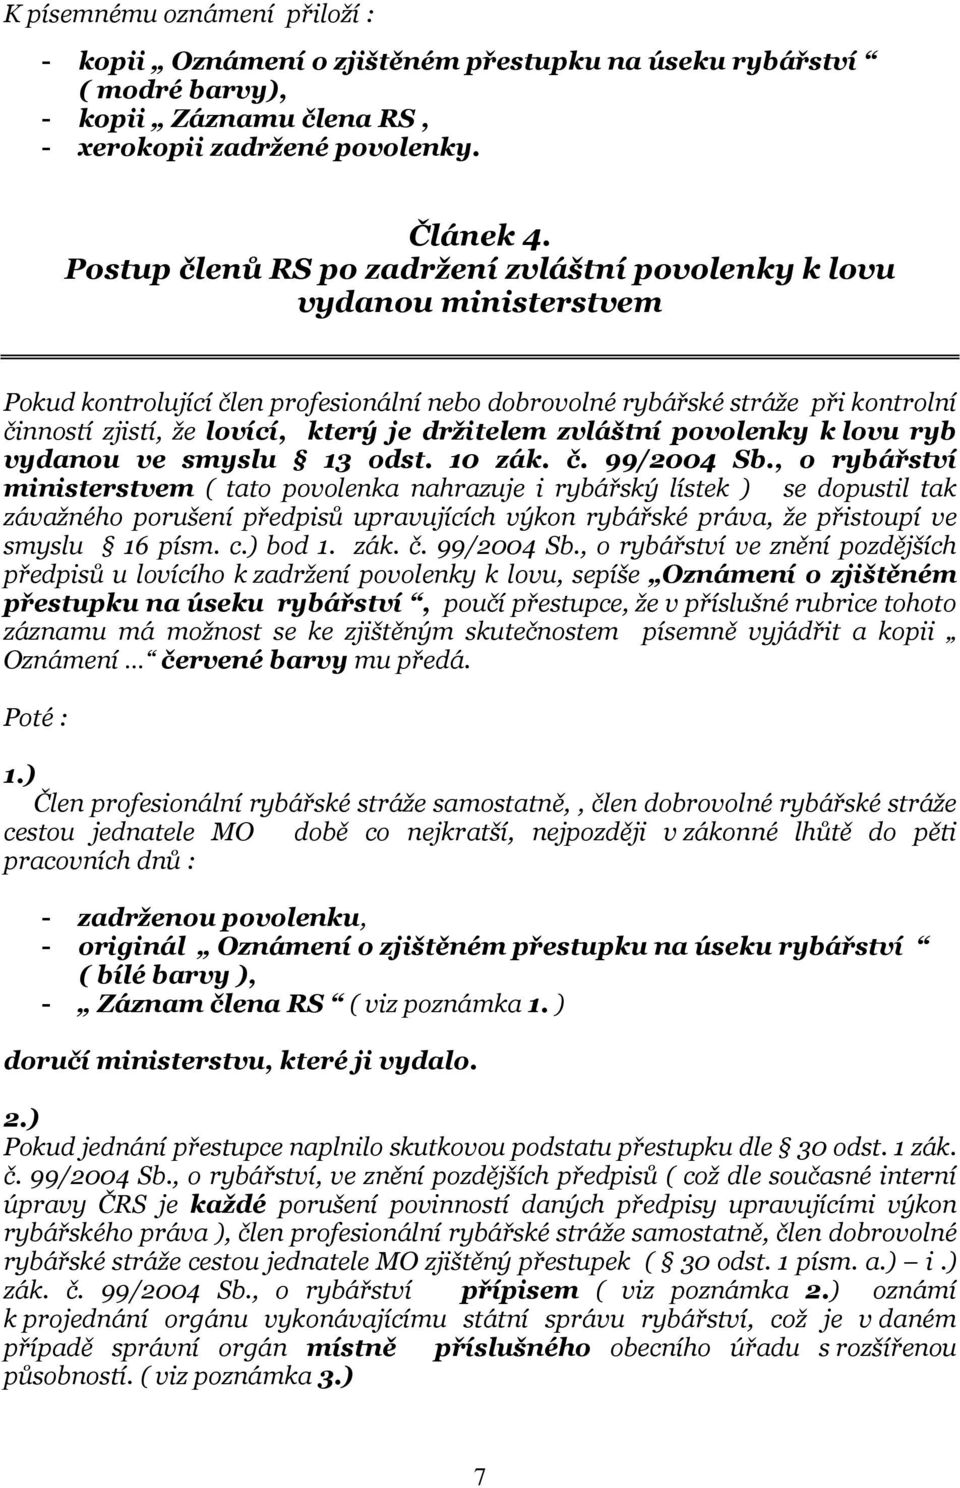 držitelem zvláštní povolenky k lovu ryb vydanou ve smyslu 13 odst. 10 zák. č. 99/2004 Sb.